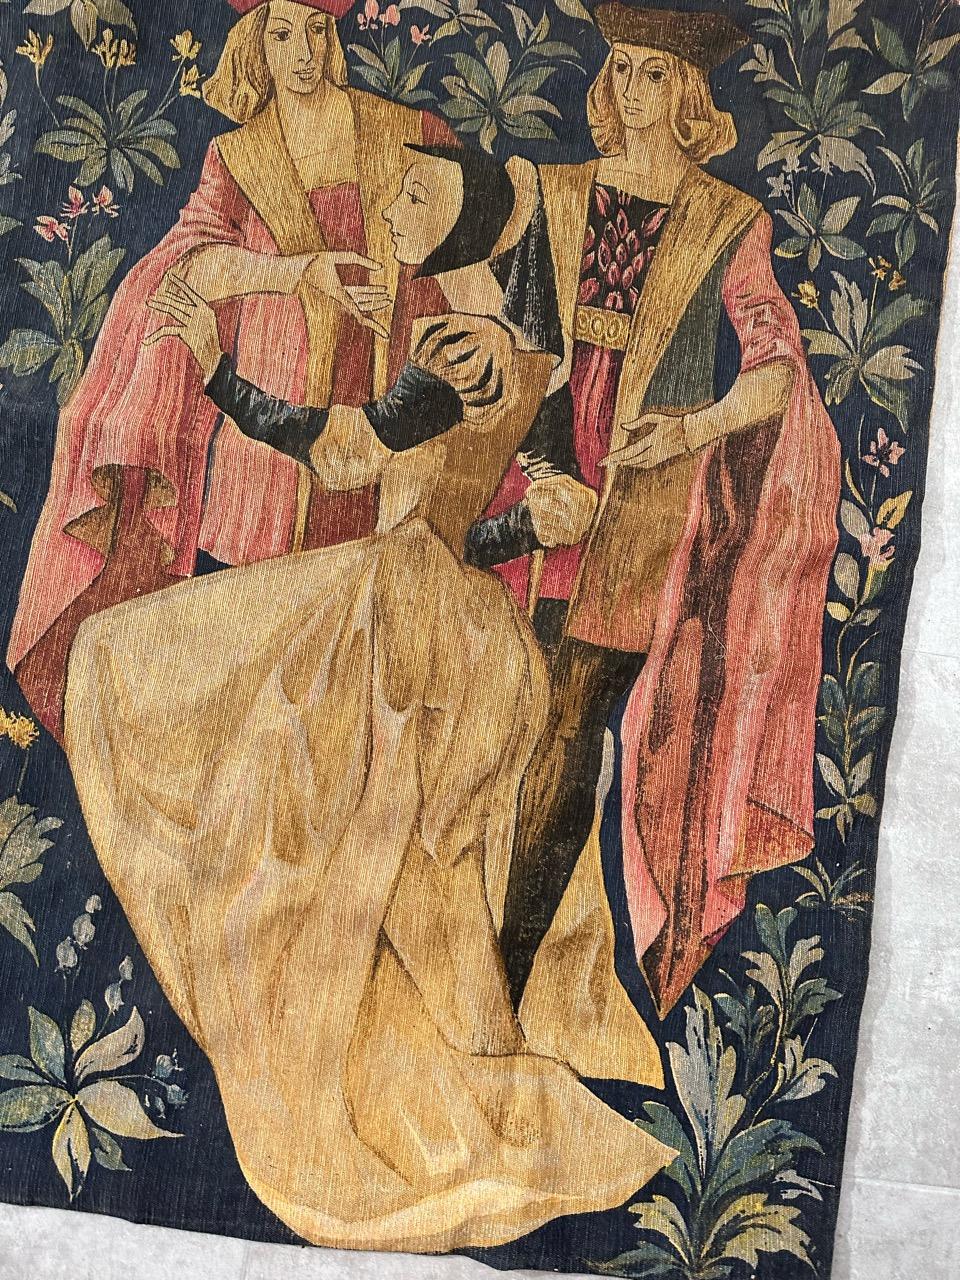 Hübscher Wandteppich im Aubusson-Stil mit schönem mittelalterlichem Muster und schönen Farben, handbedruckt auf Baumwollgrund

✨✨✨
